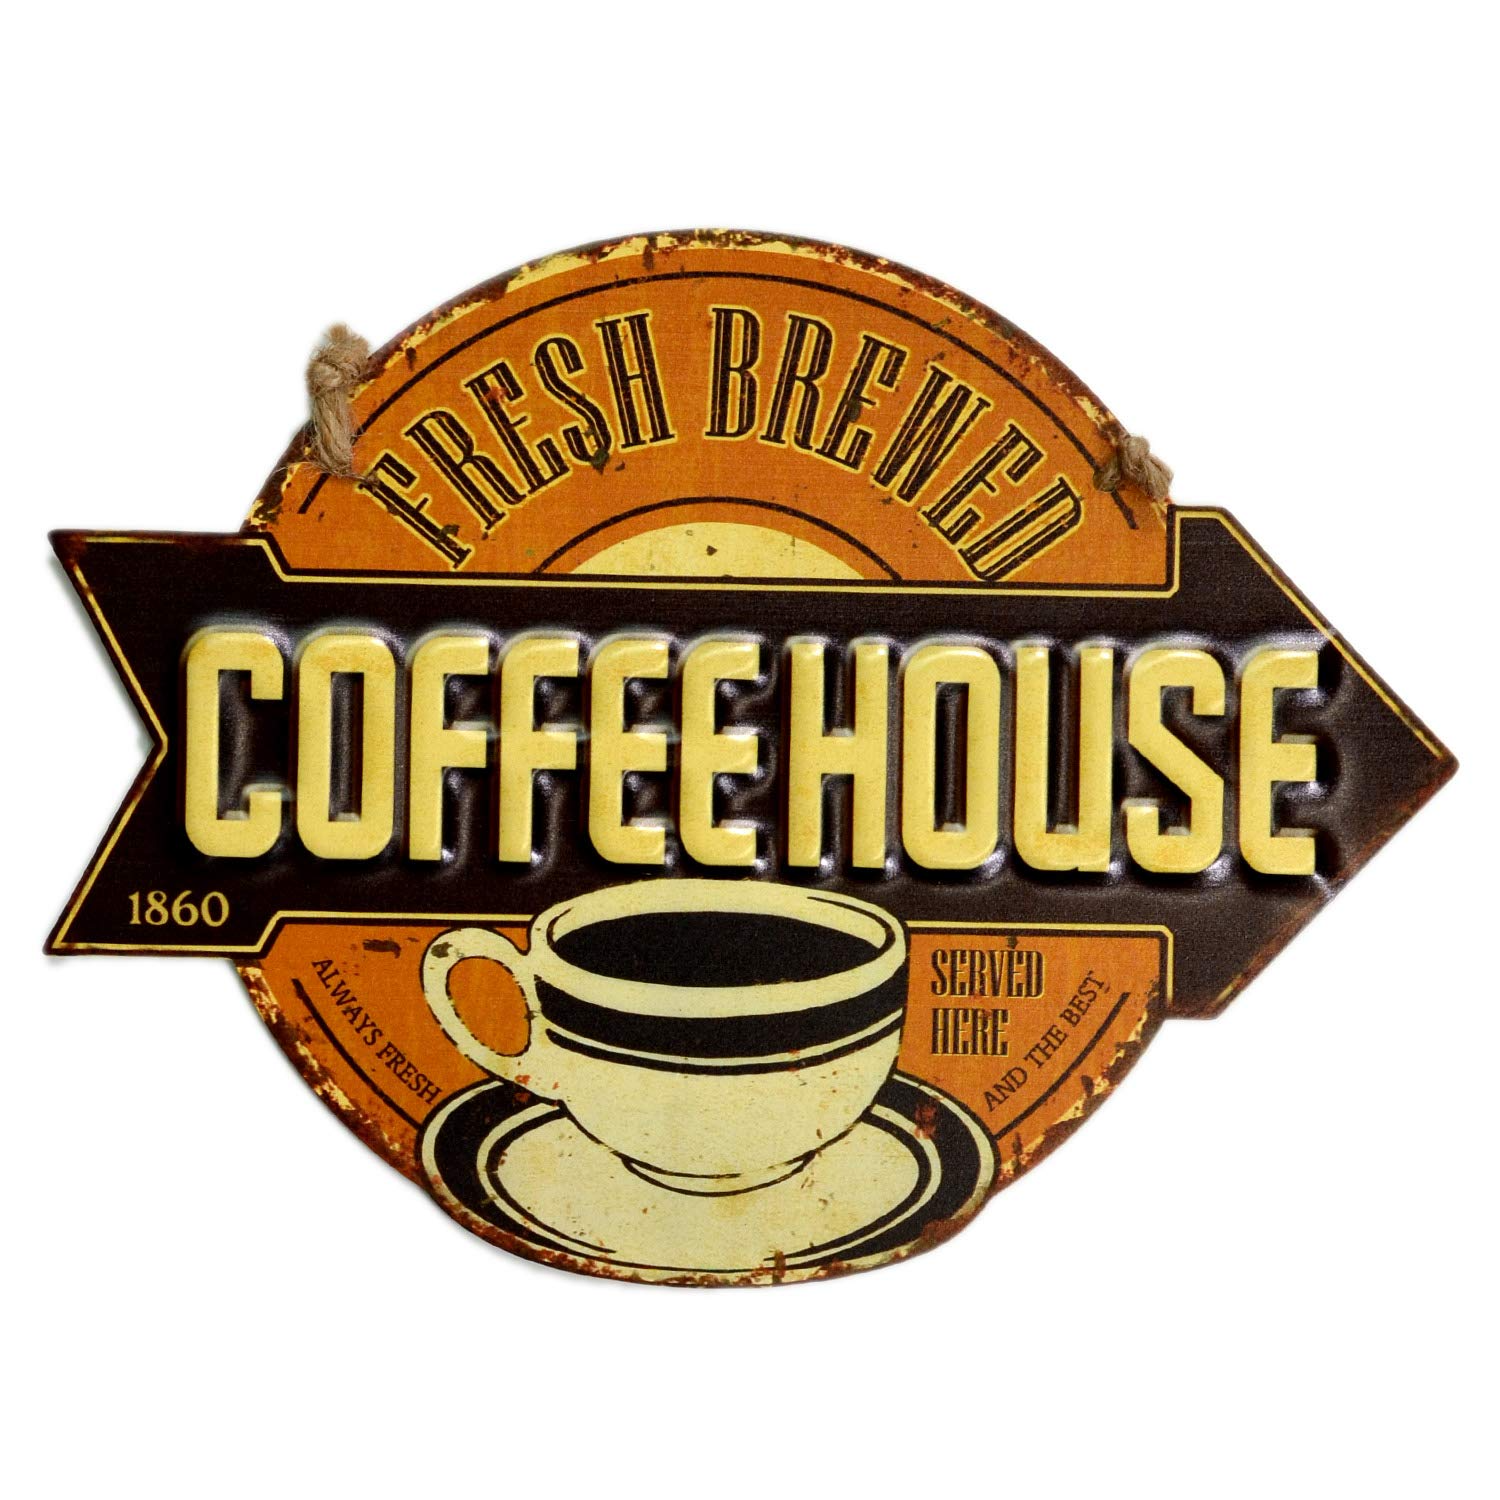 【USA アメリカン デザイン】COFFEE HOUSE コーヒー ハウス USA キッチン レストラン カフェ ガレージ サインボード ビンテージ インテリア 看板 ; AVSB-280